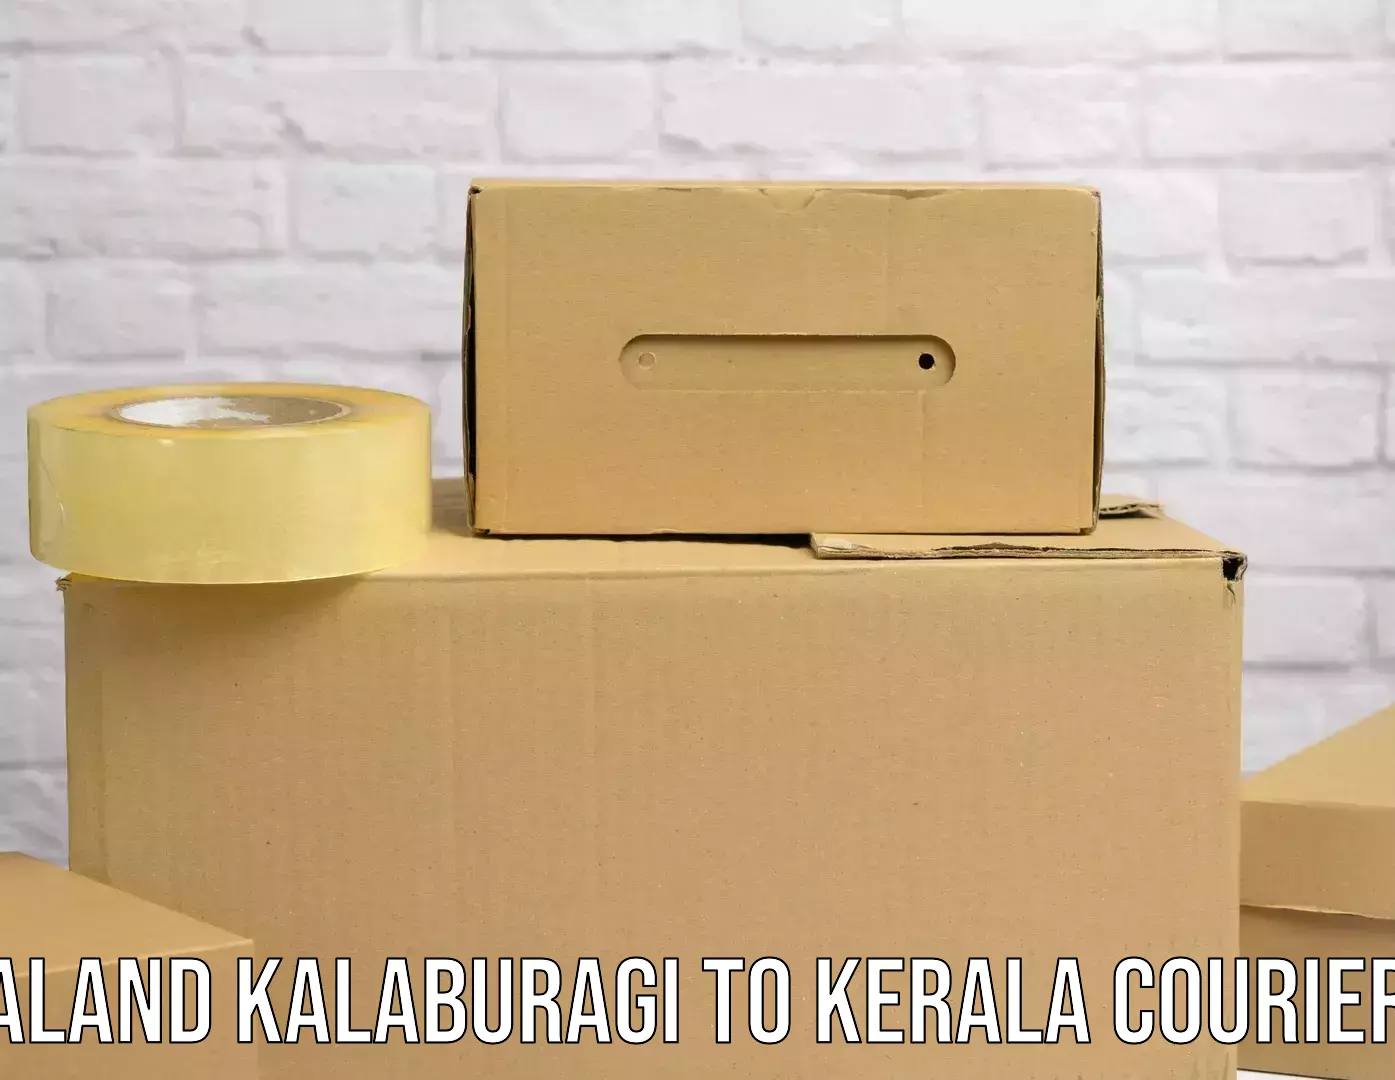 Optimized delivery routes Aland Kalaburagi to Kattappana